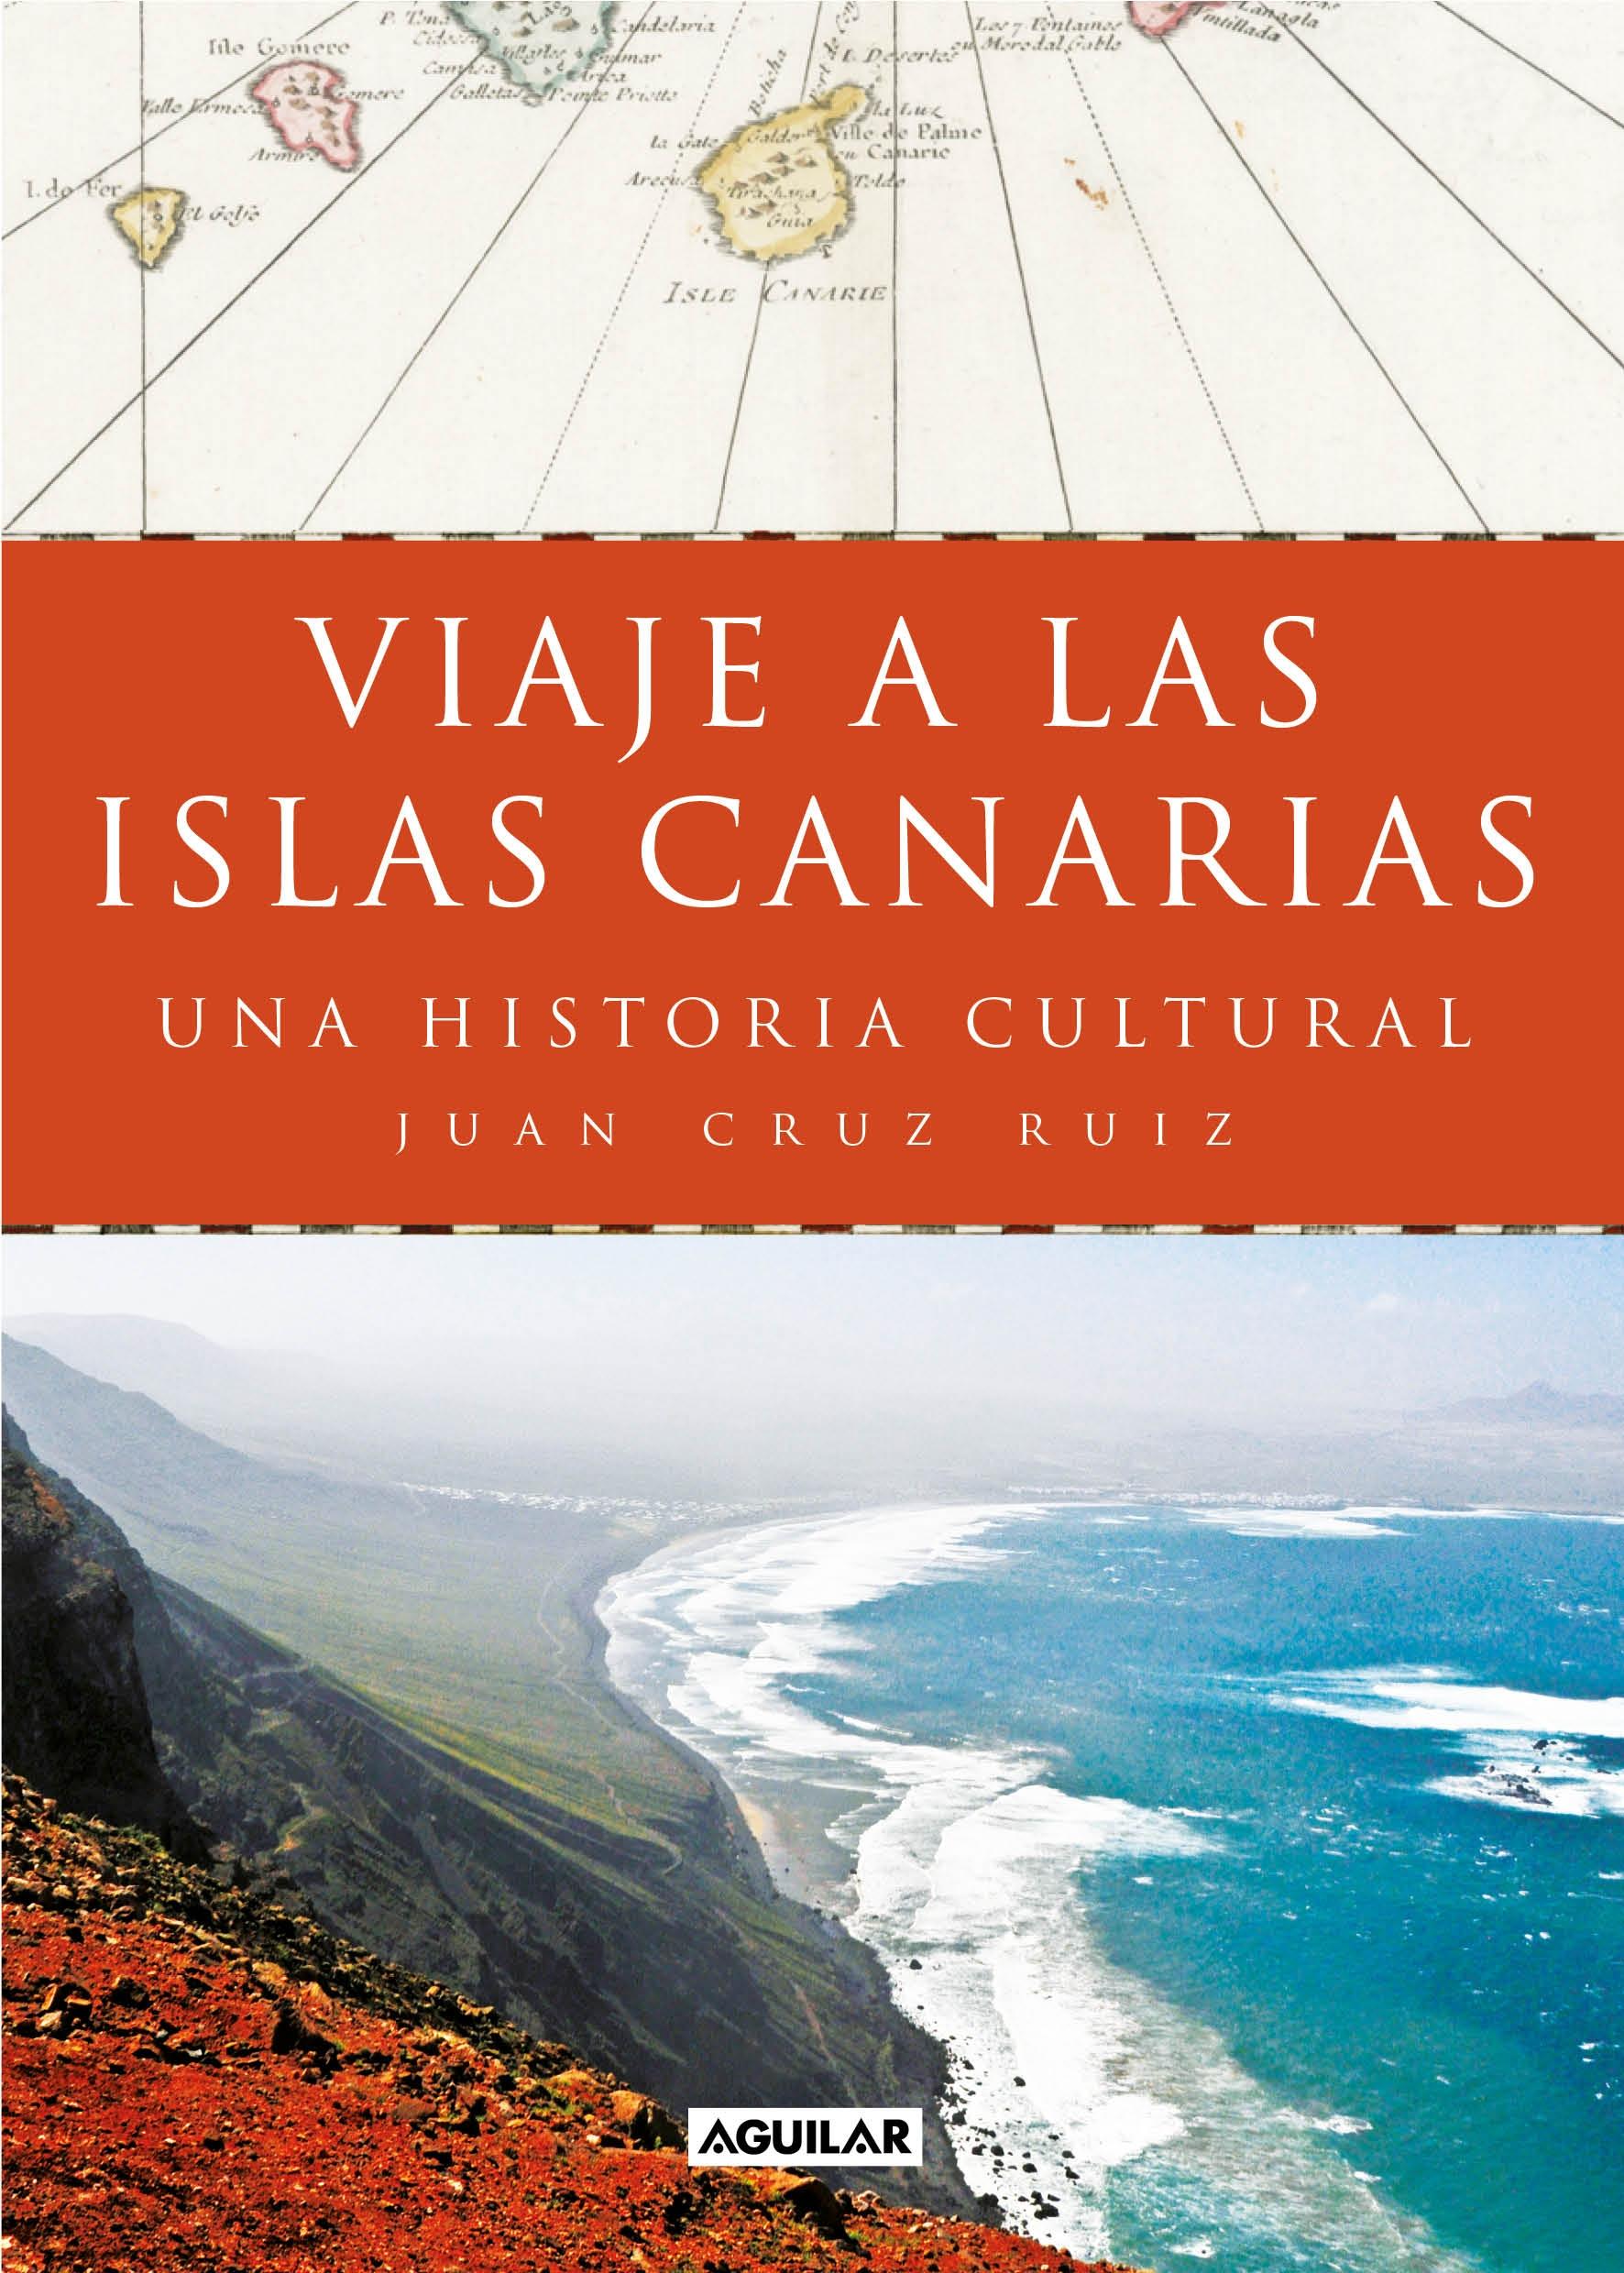 Viaje a las Islas Canarias "Una Historia Cultural". 